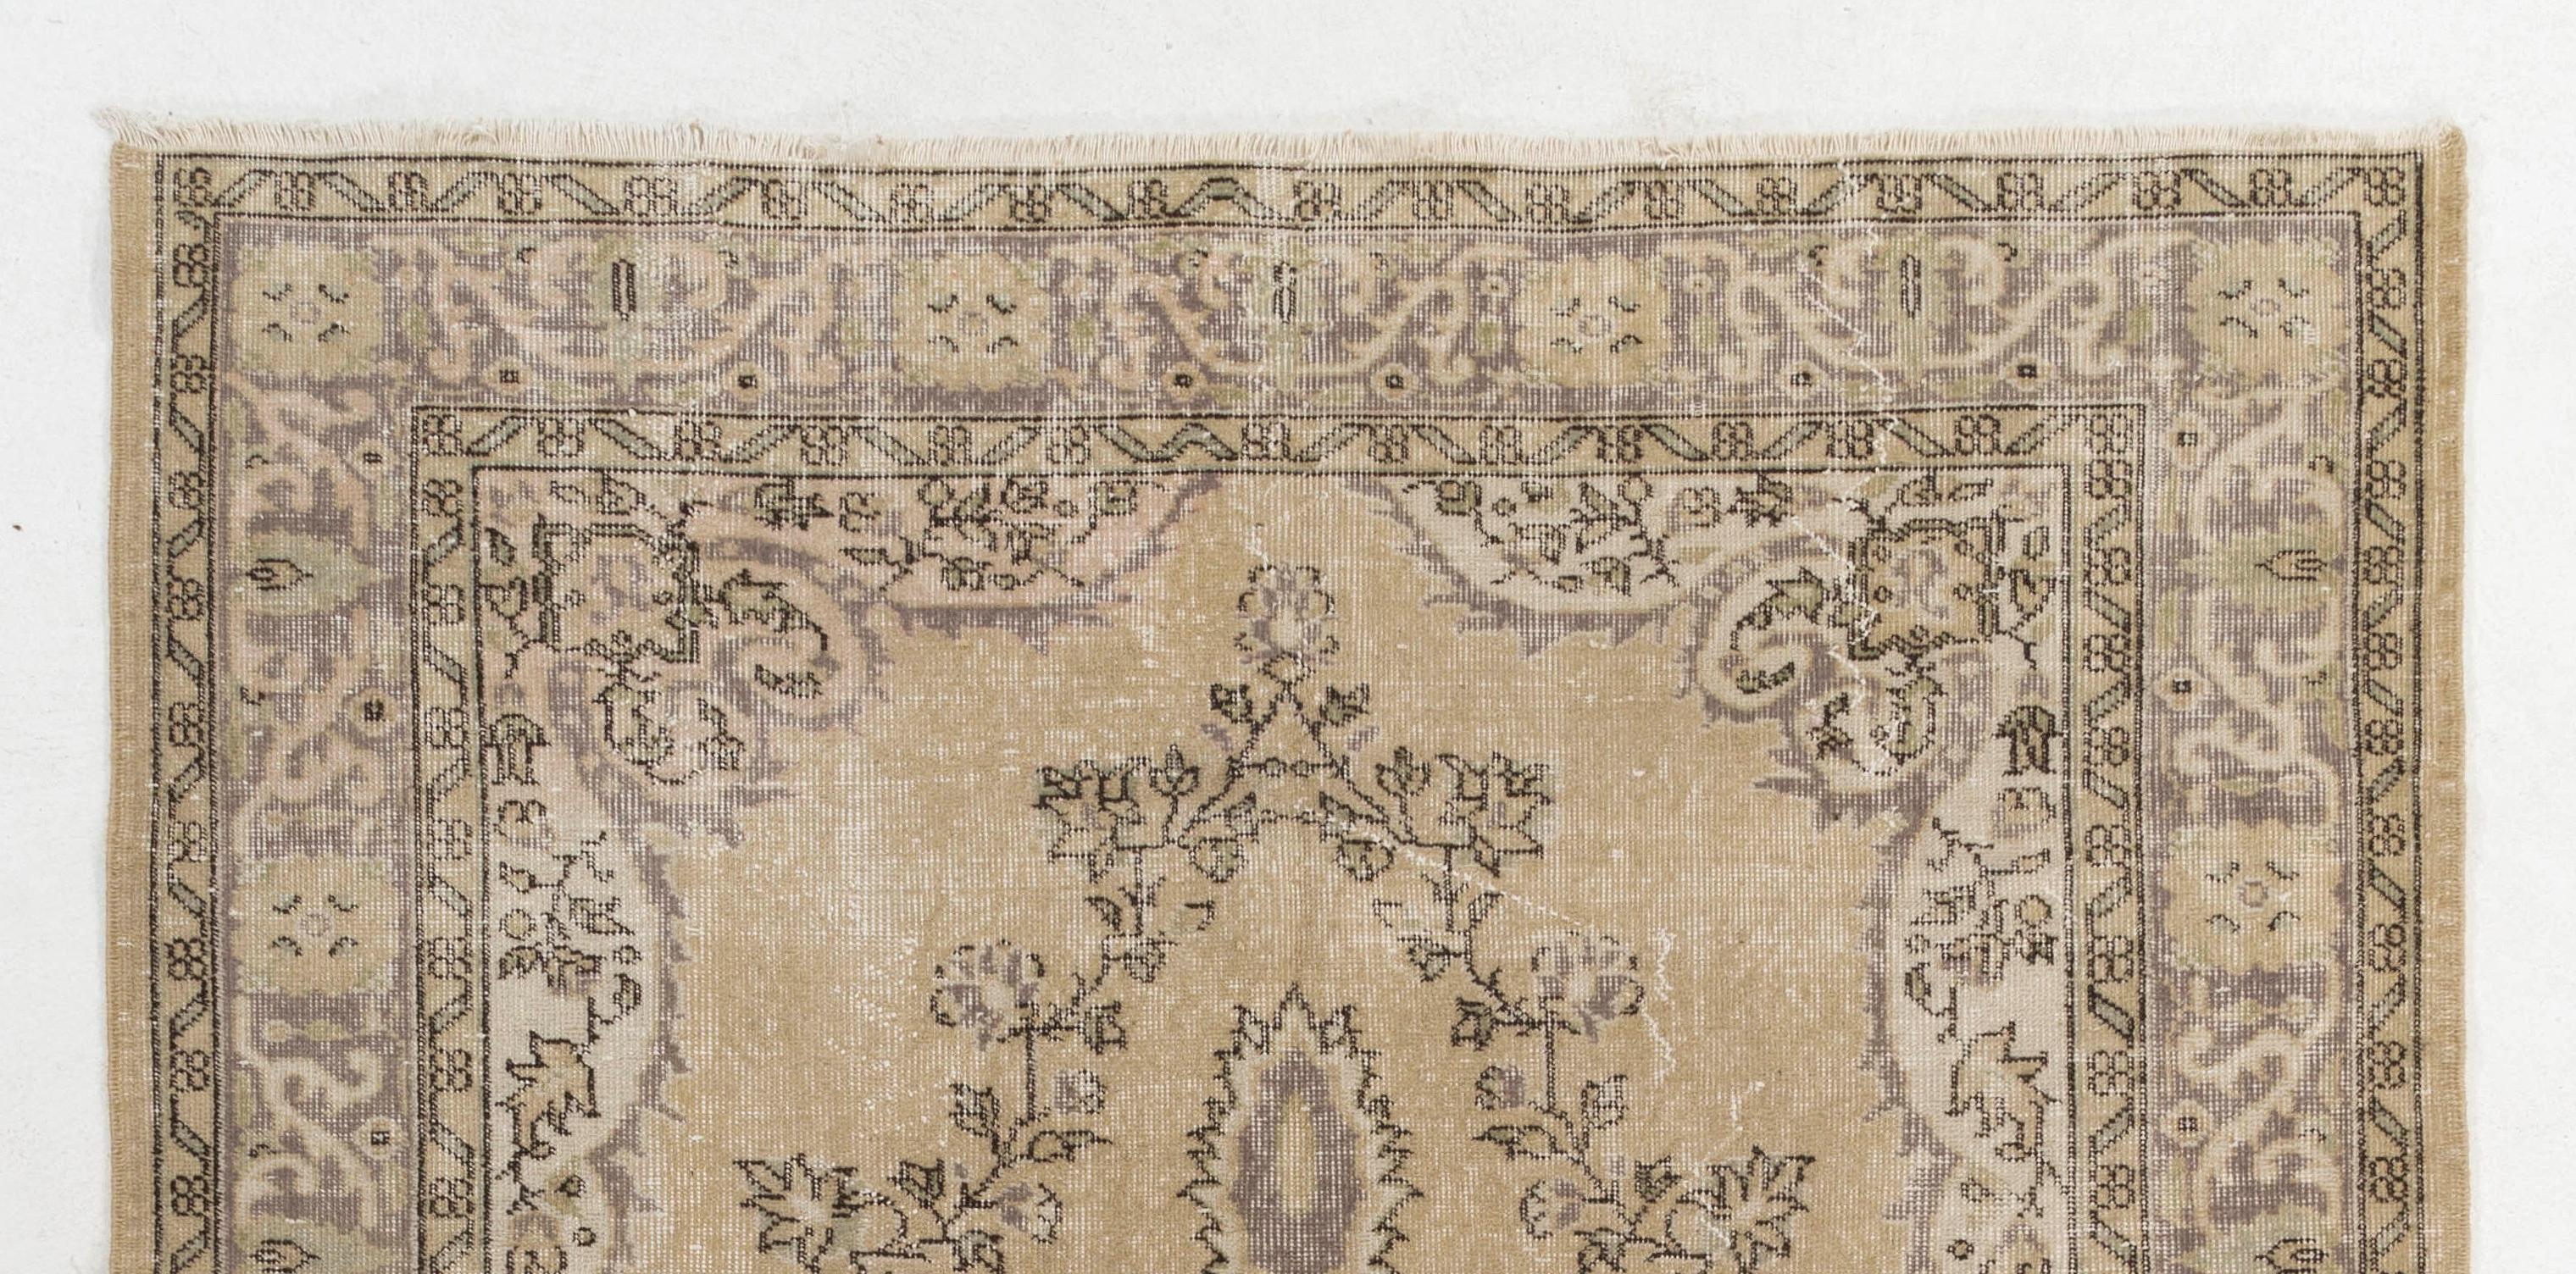 Ein feiner handgeknüpfter türkischer Teppich aus den 1960er Jahren mit einem eleganten Medaillonmuster, das rundherum mit einem Blumenkranz in Beige und Taupe-Grau vor einem buttermilchgelben Hintergrund verziert ist. Der Teppich hat einen